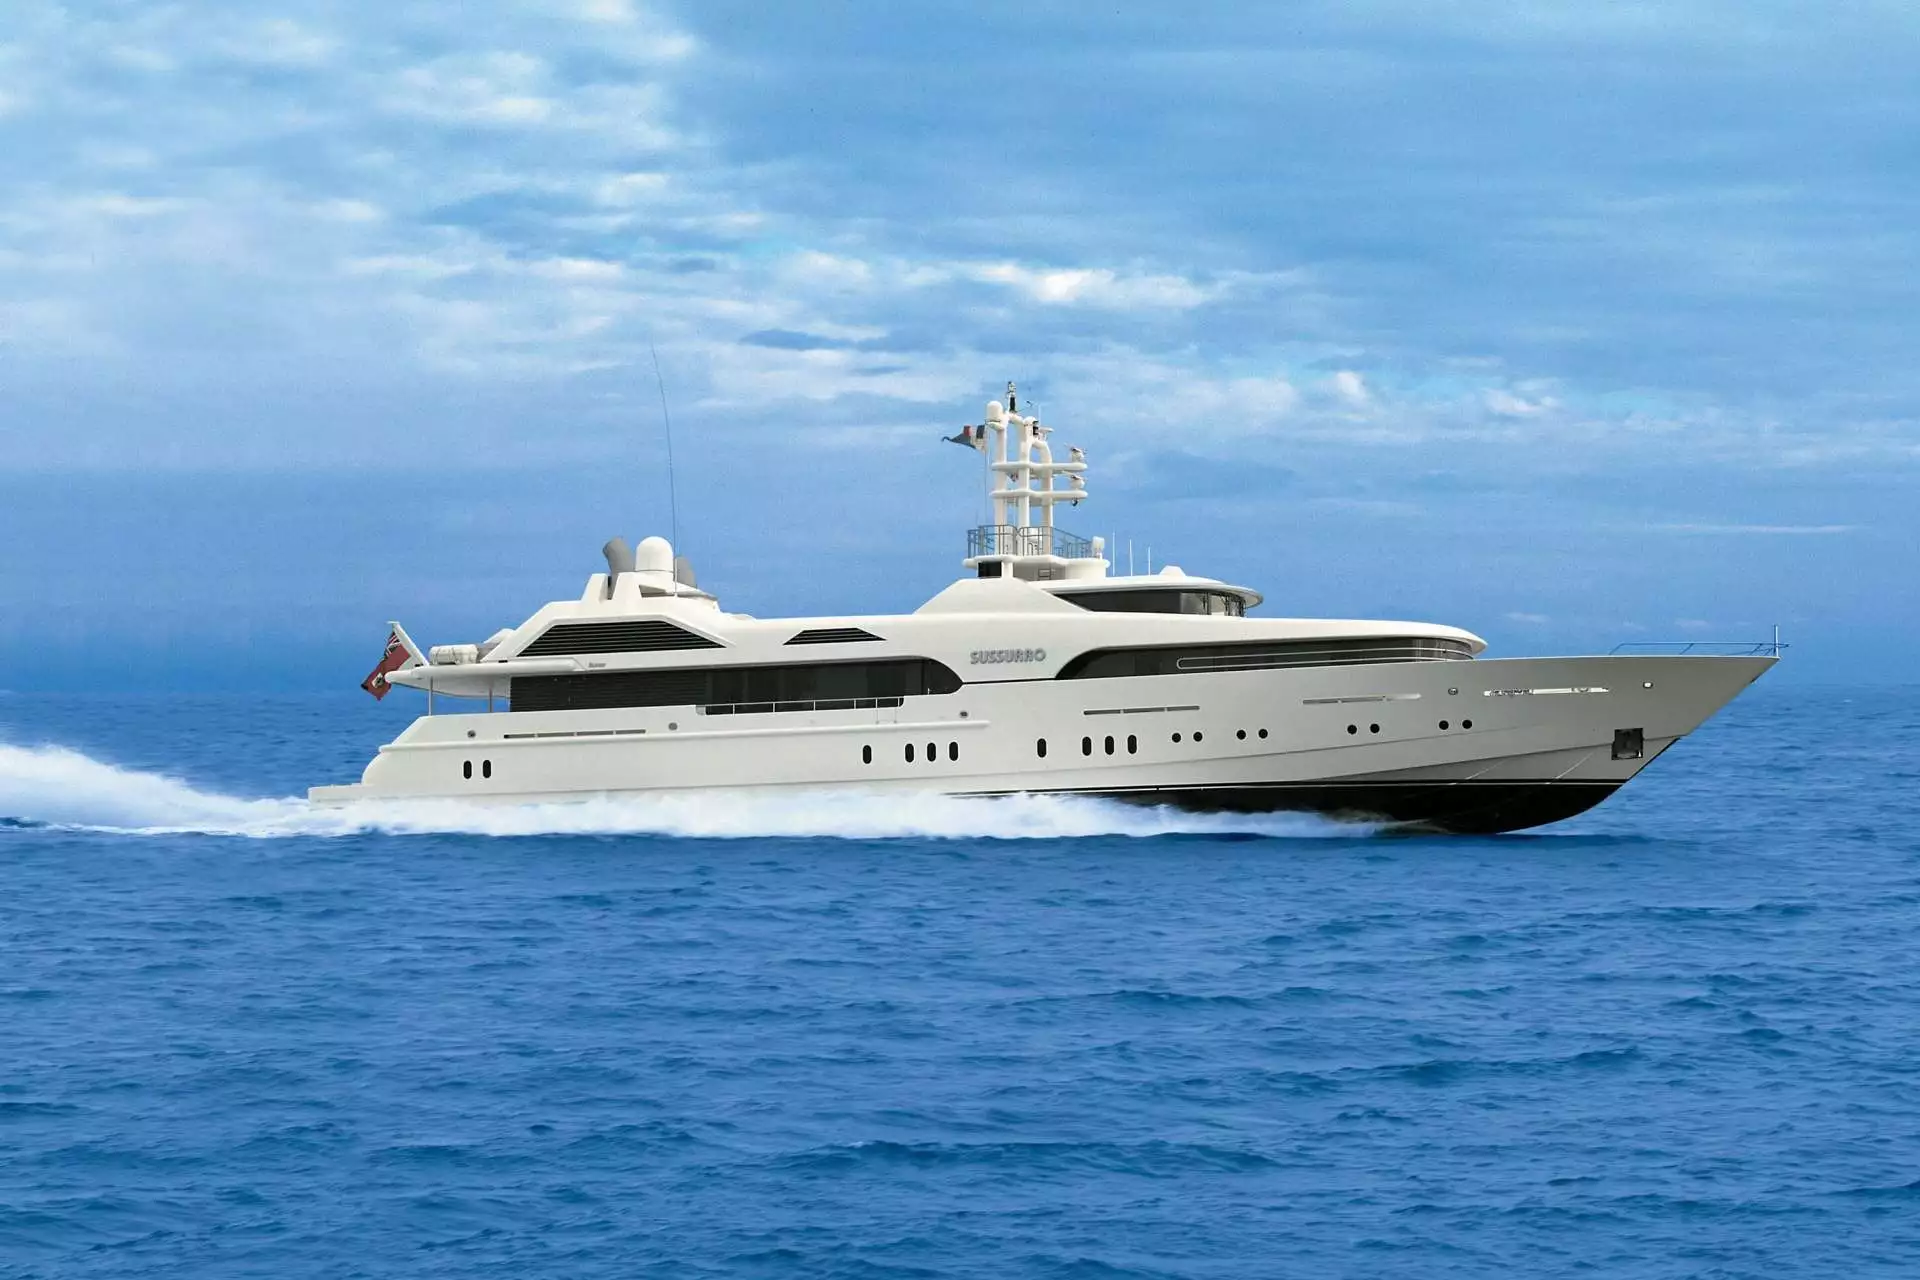 SUSSURRO Yacht • Irina Malandina $25M Superyacht